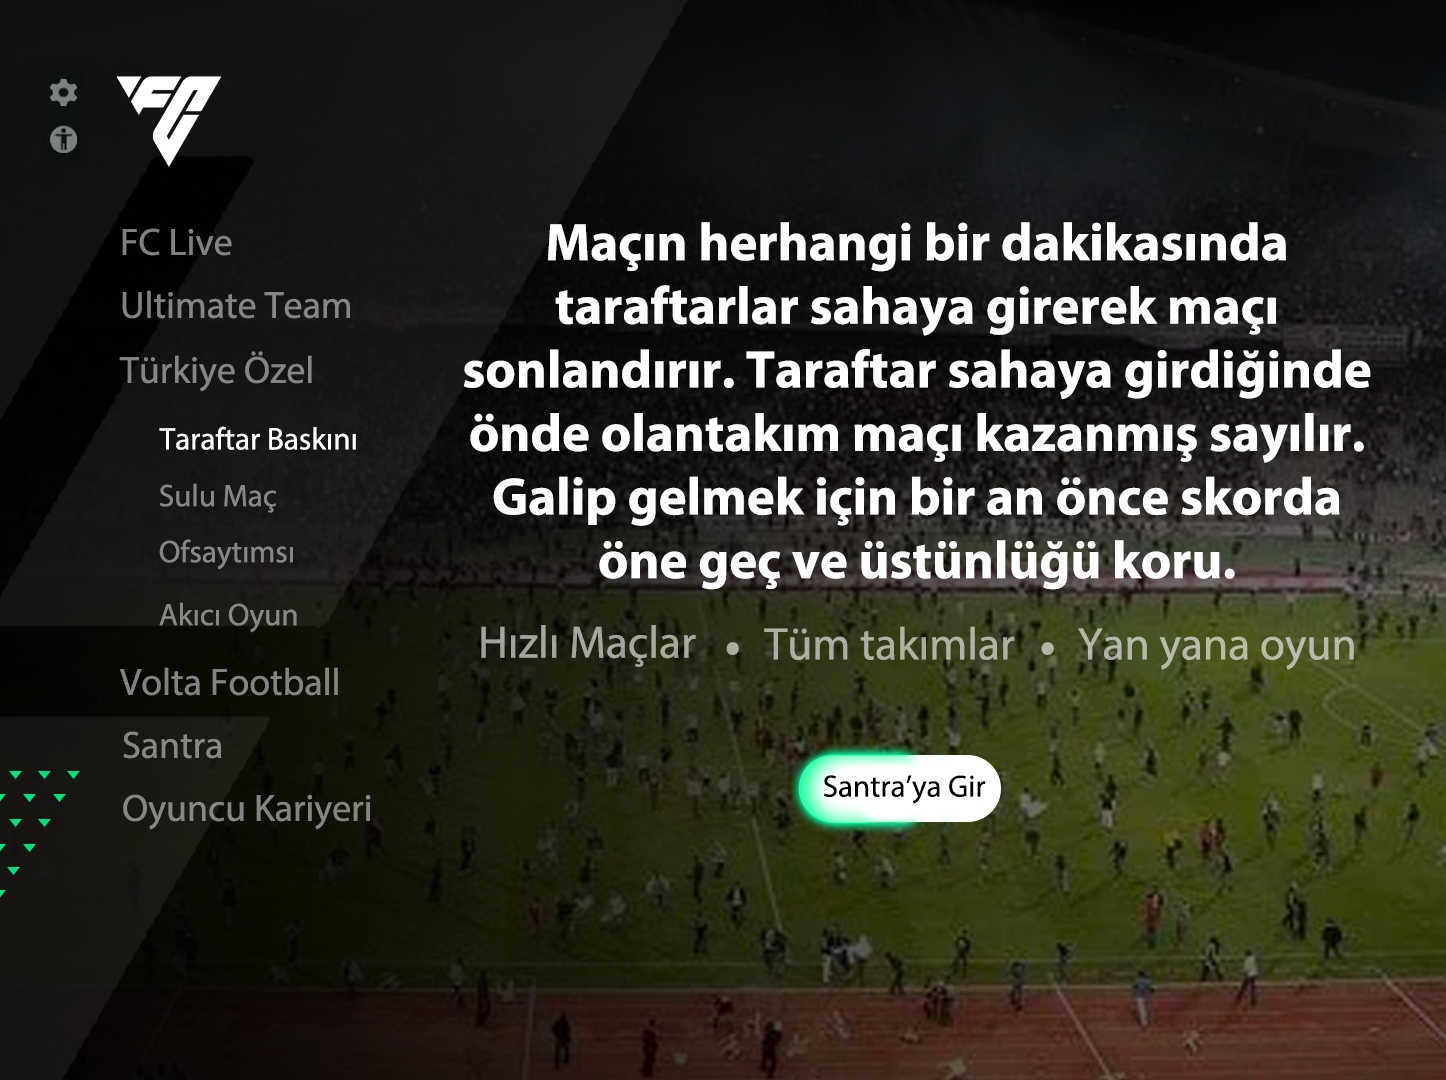 Meral Erden: Böyle Lige Böyle Oyun: Fc 24'Te Türk Futboluna Özel Modlar Ve Taktikler Olsa Nasıl Olurdu? 1